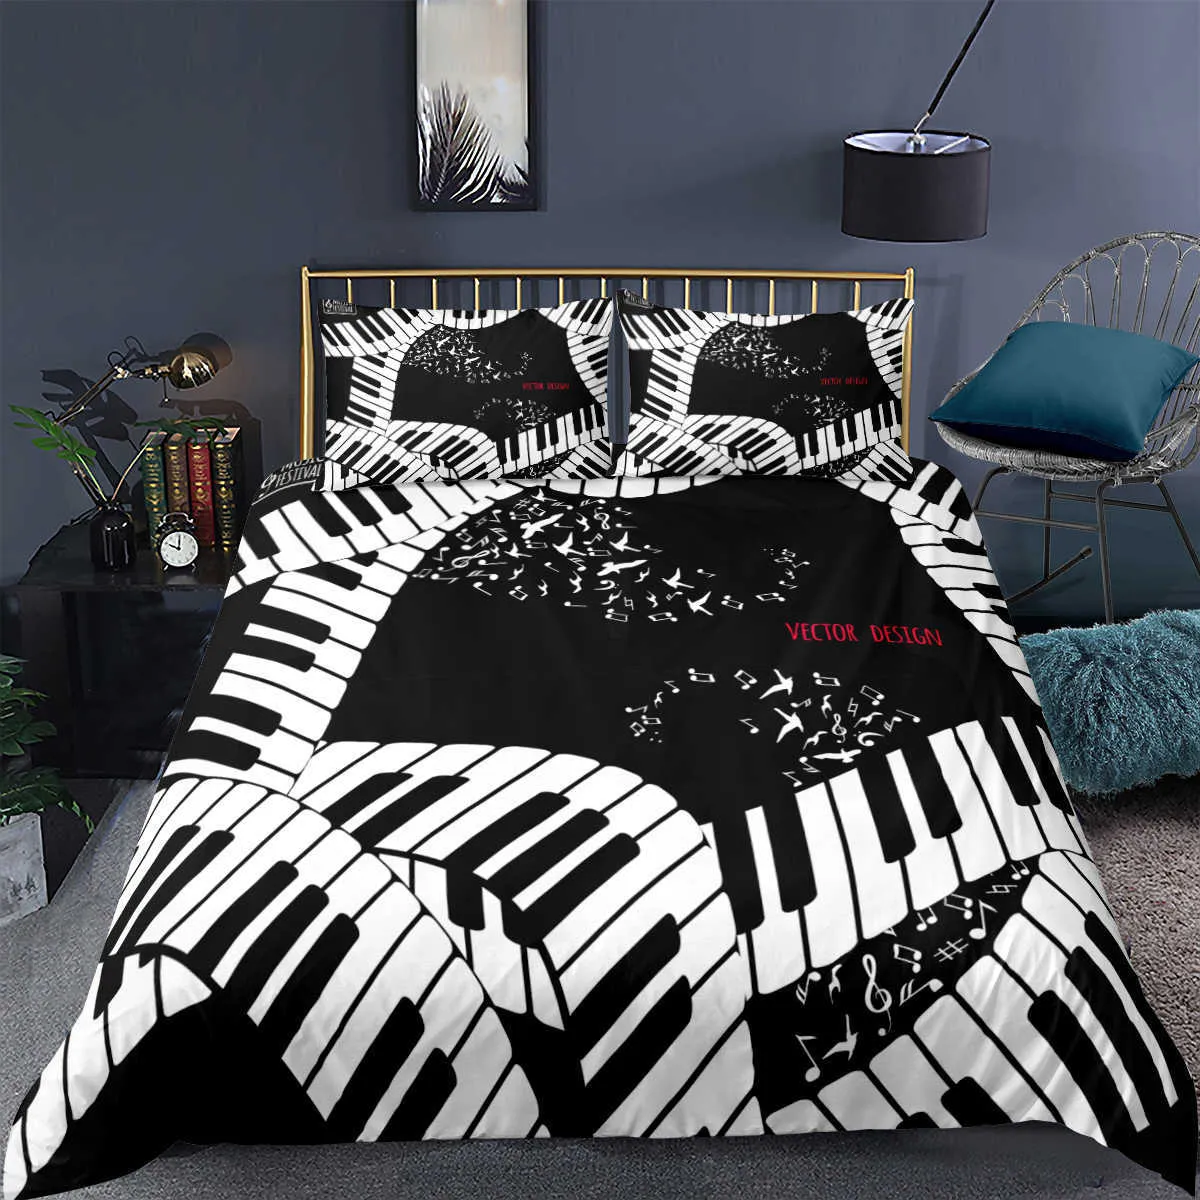 ピアノの音楽ノート印刷された寝具セット3Dラグジュアリーベッドセット掛け布団大人の子供用布団カバー枕カバーツインクイーンキングサイズh09134508075